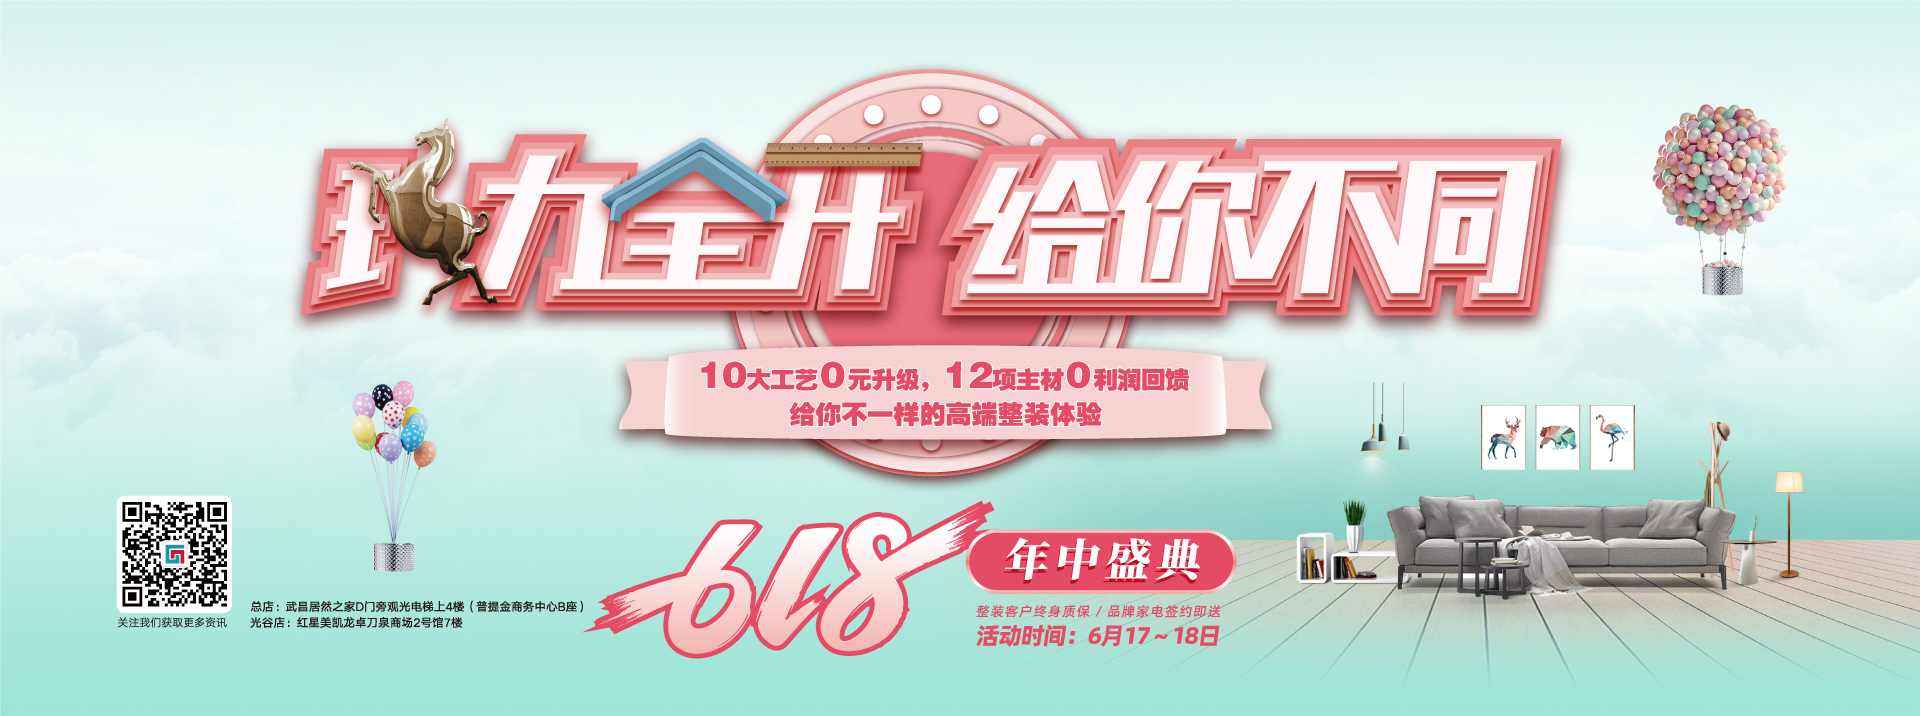 上海女人早晨日BB视频六西格玛装饰活动海报